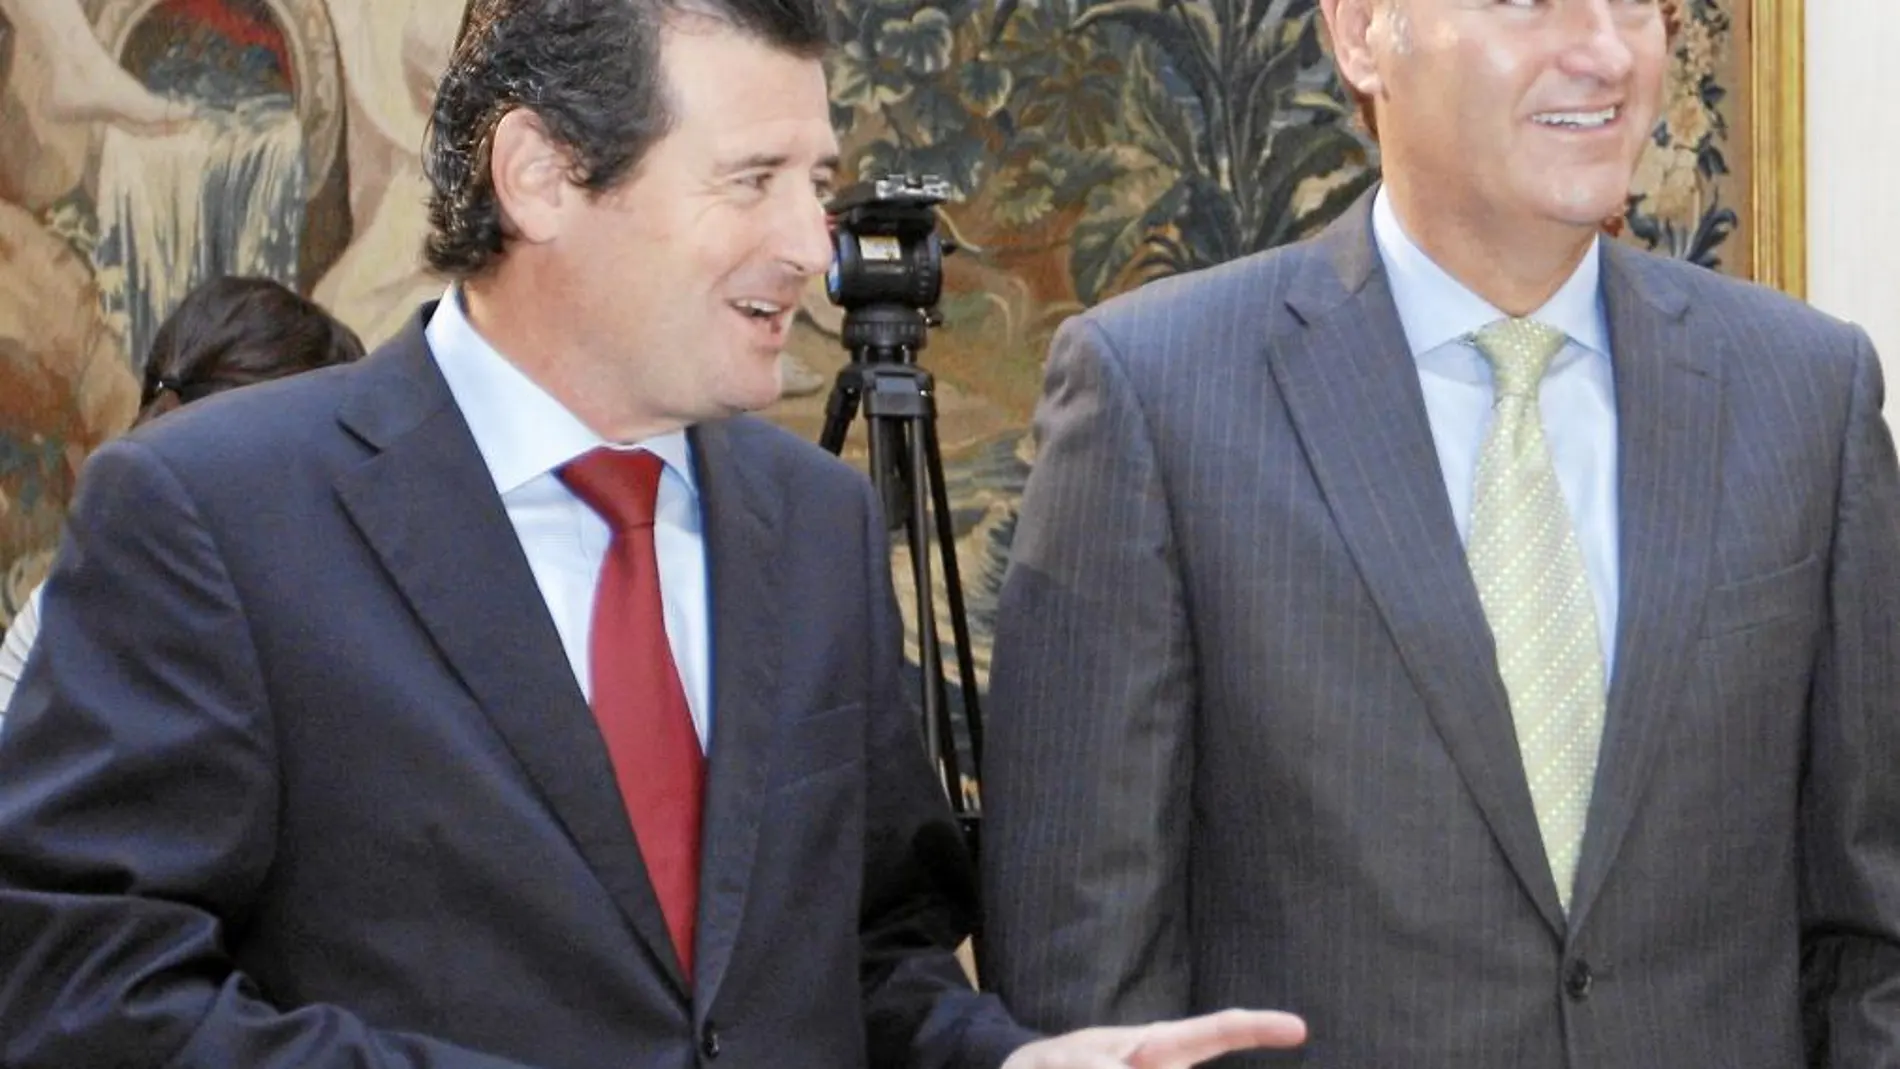 El presidente de la Generalitat, Alberto Fabra, asistió a la conferencia que dio el vicepresidente Císcar junto a casi todo el Consell